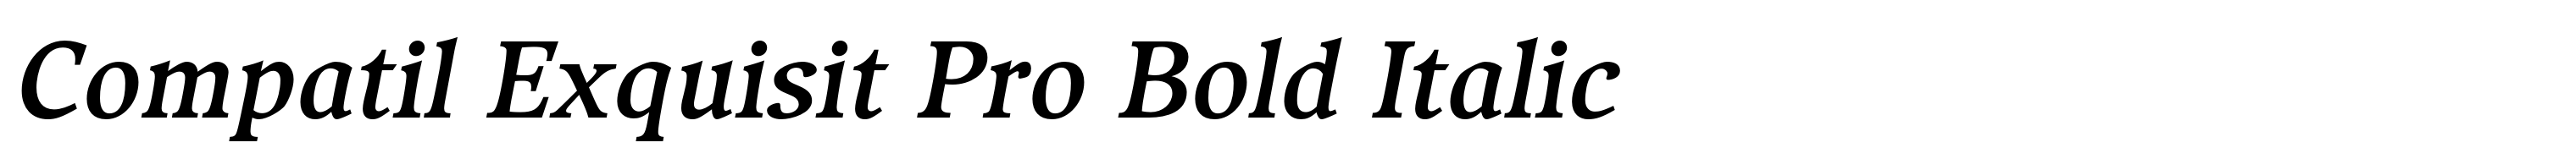 Compatil Exquisit Pro Bold Italic